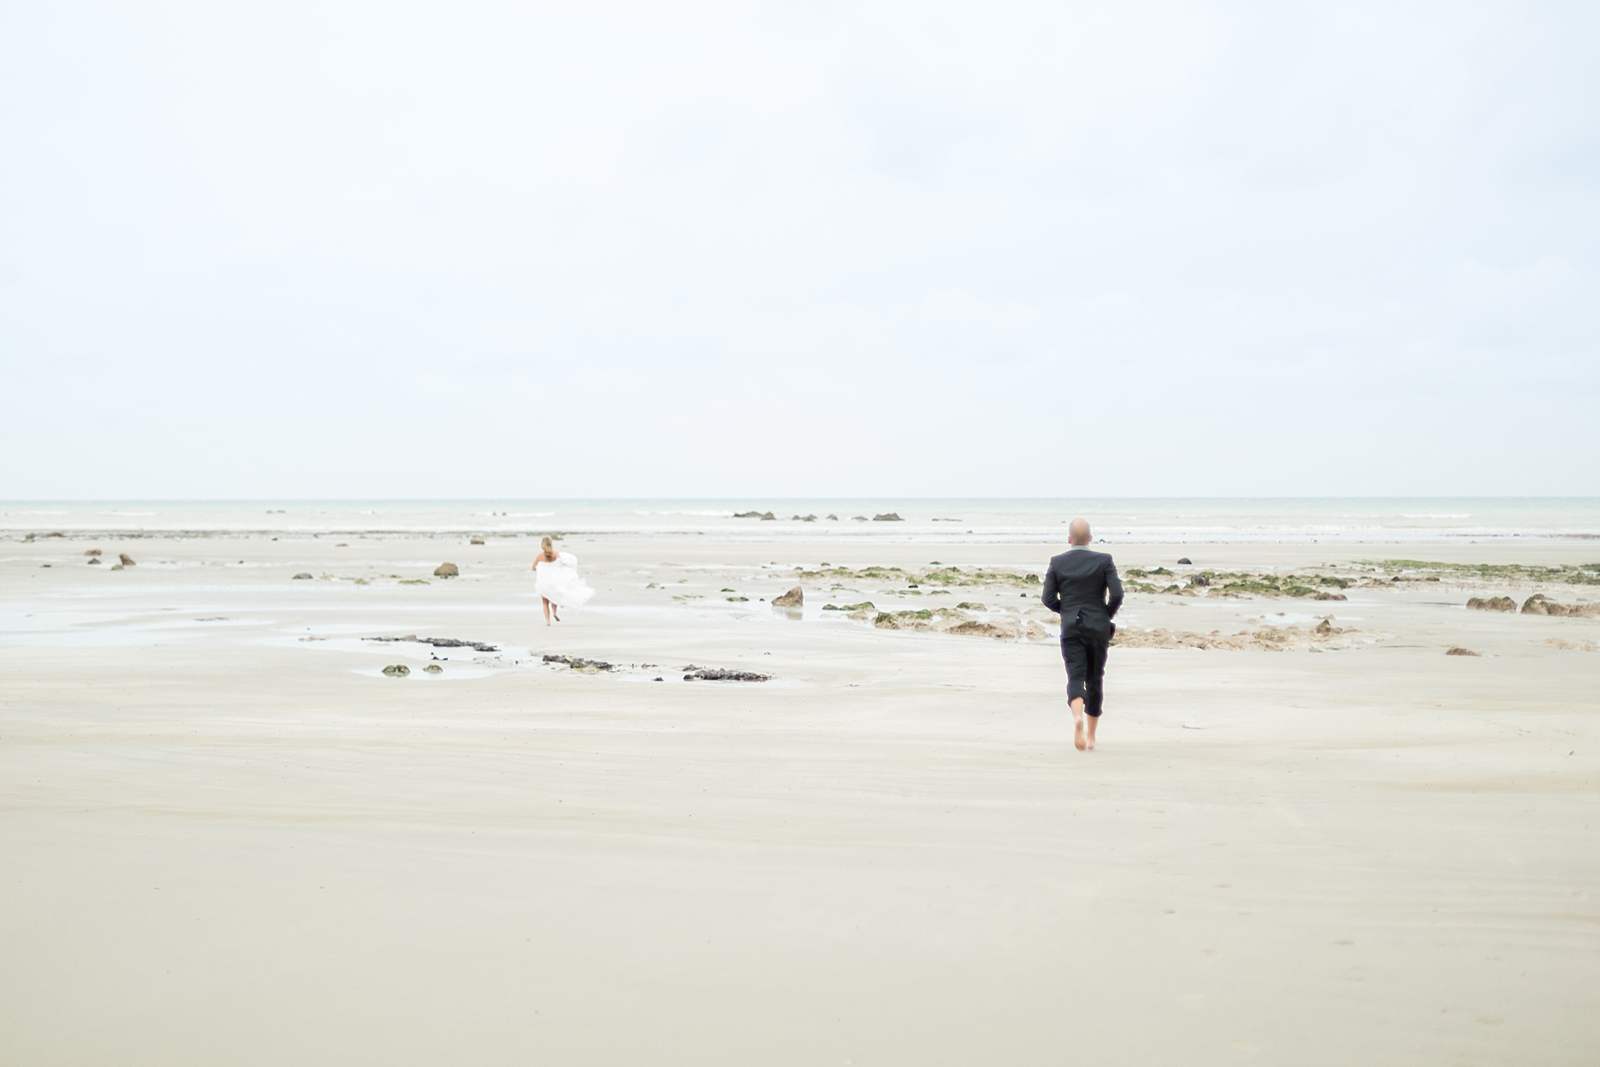 les mariés se courent après sur la plage de normandie. ils sont pieds nus dans le sable. la marée est basse.
